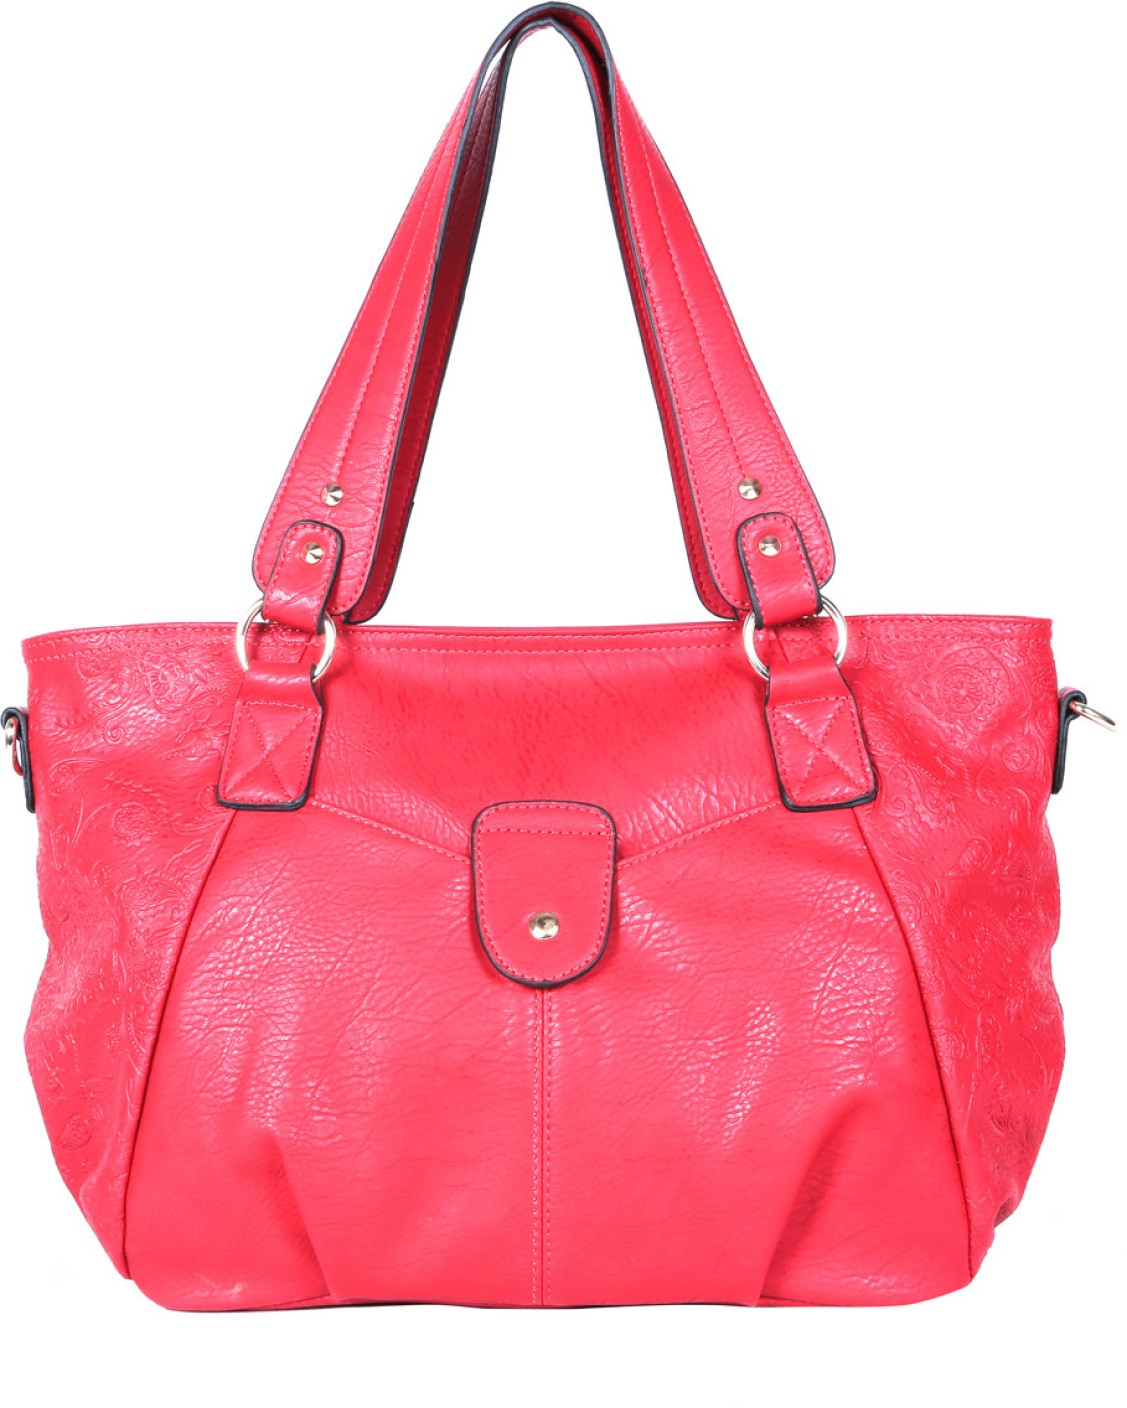 Buy David Jones Hand-held Bag Red-1216 Online @ Best Price in India ...